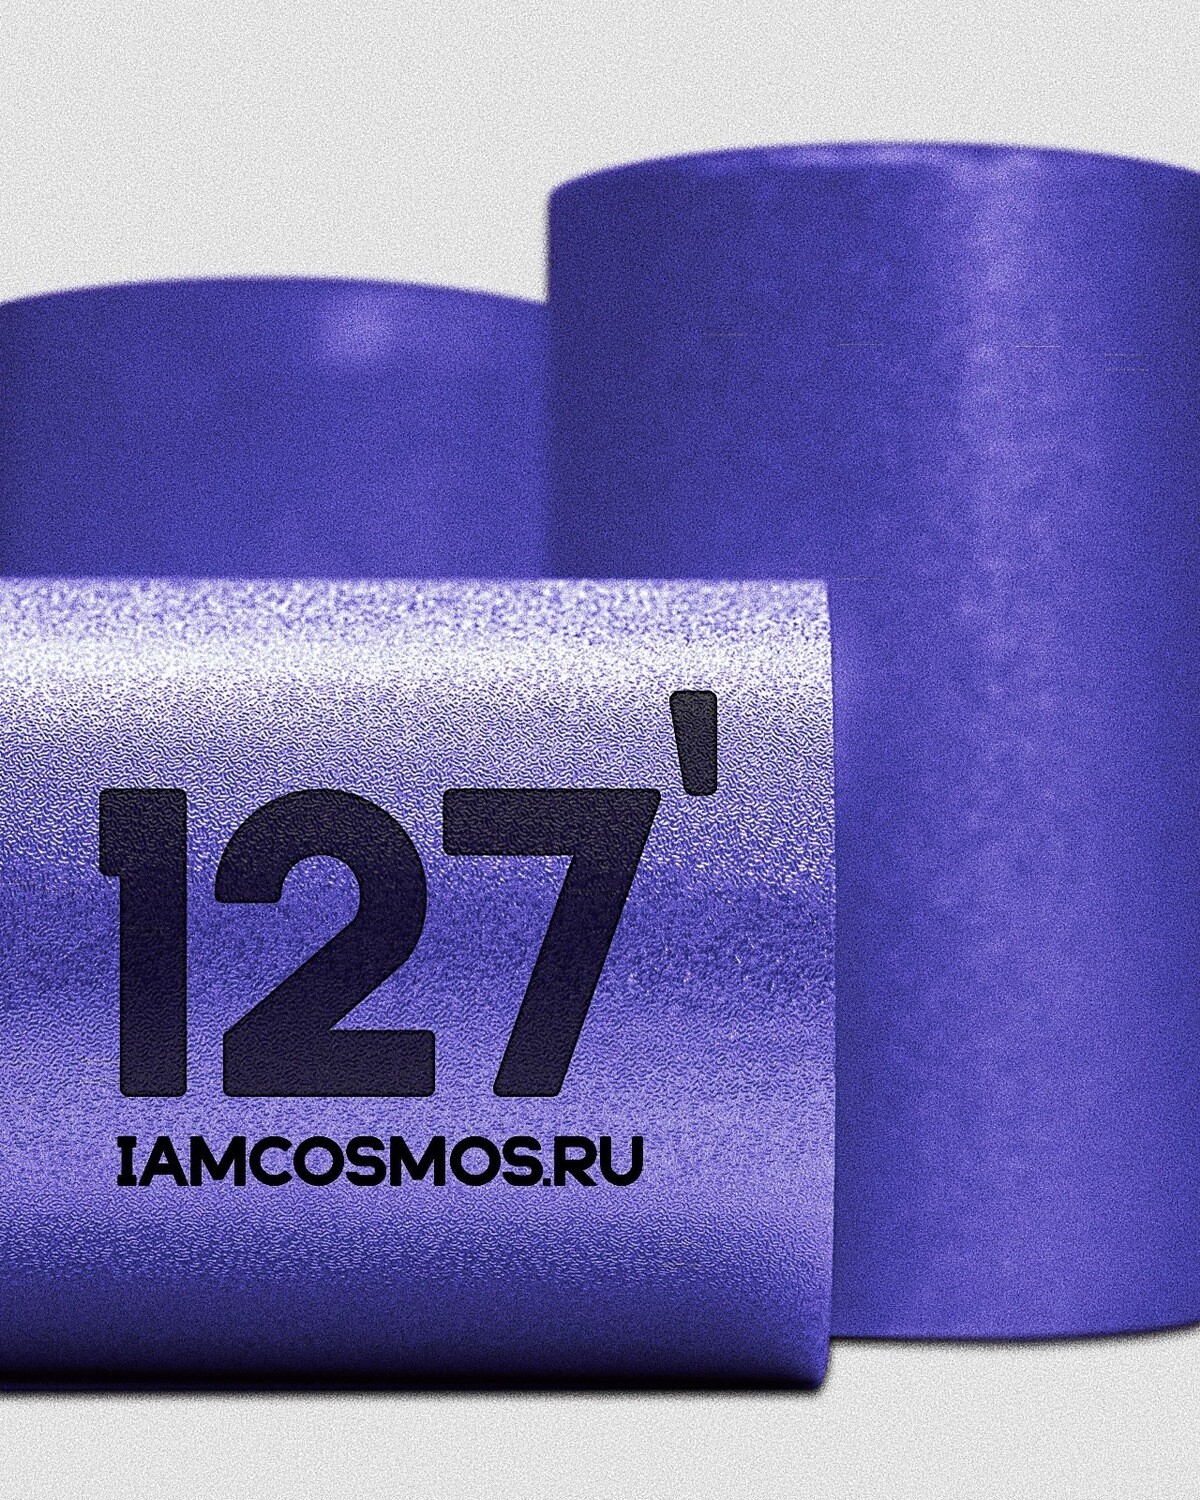 ЦУНАМИ 127’ - синяя фольга с тиснением, 50 метров.